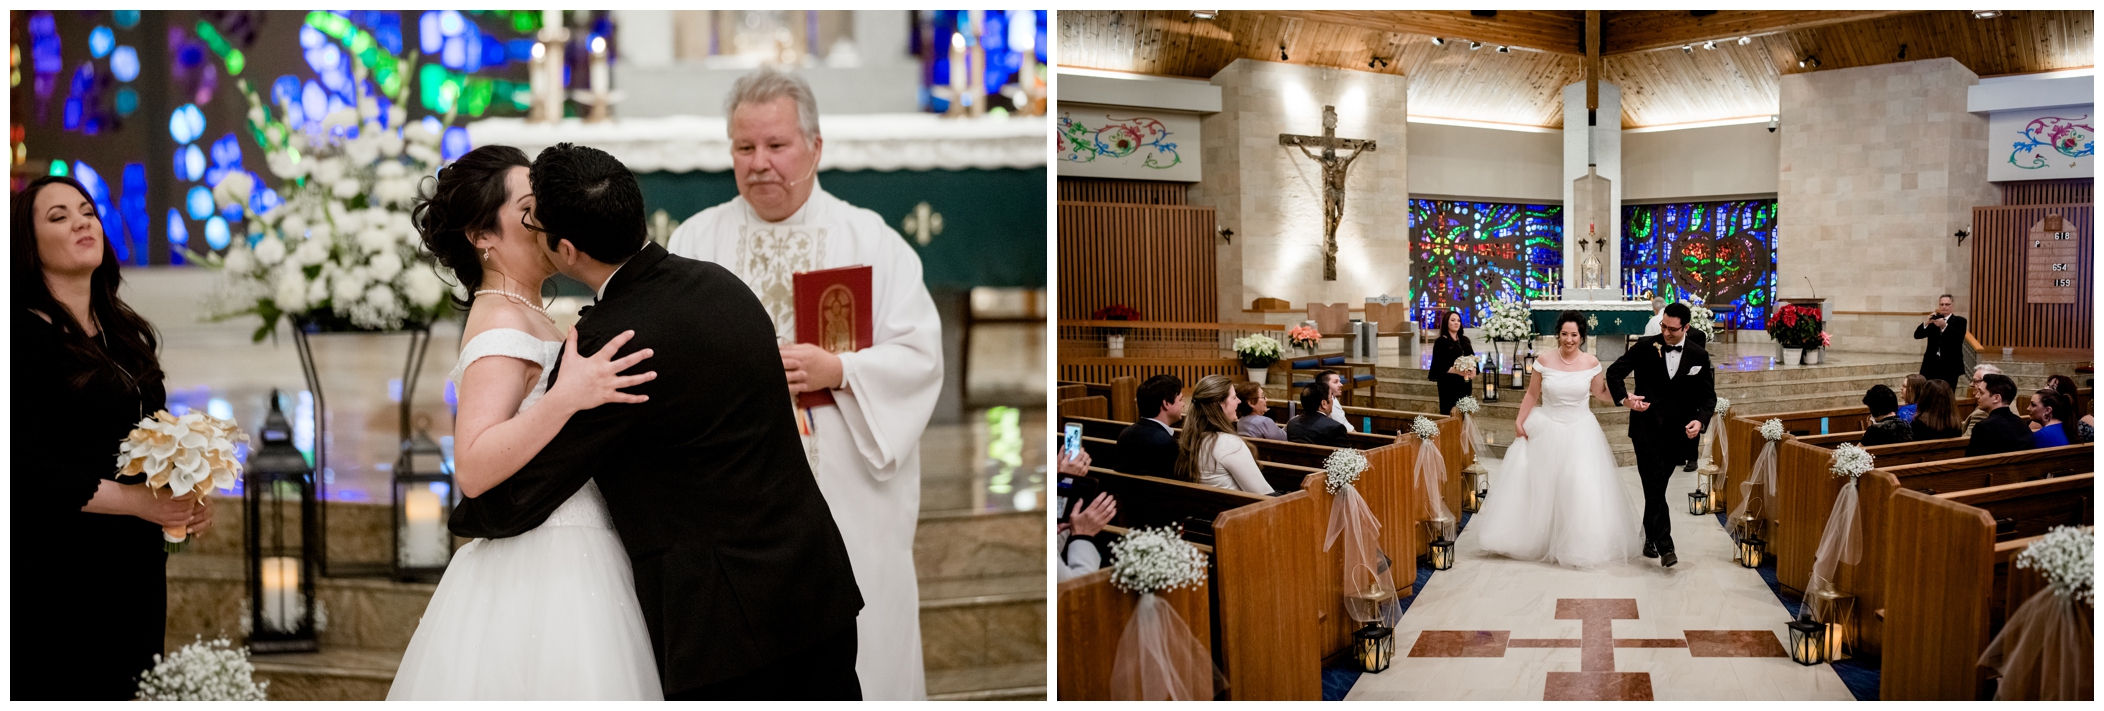 Westminster Colorado church wedding ceremony photos 